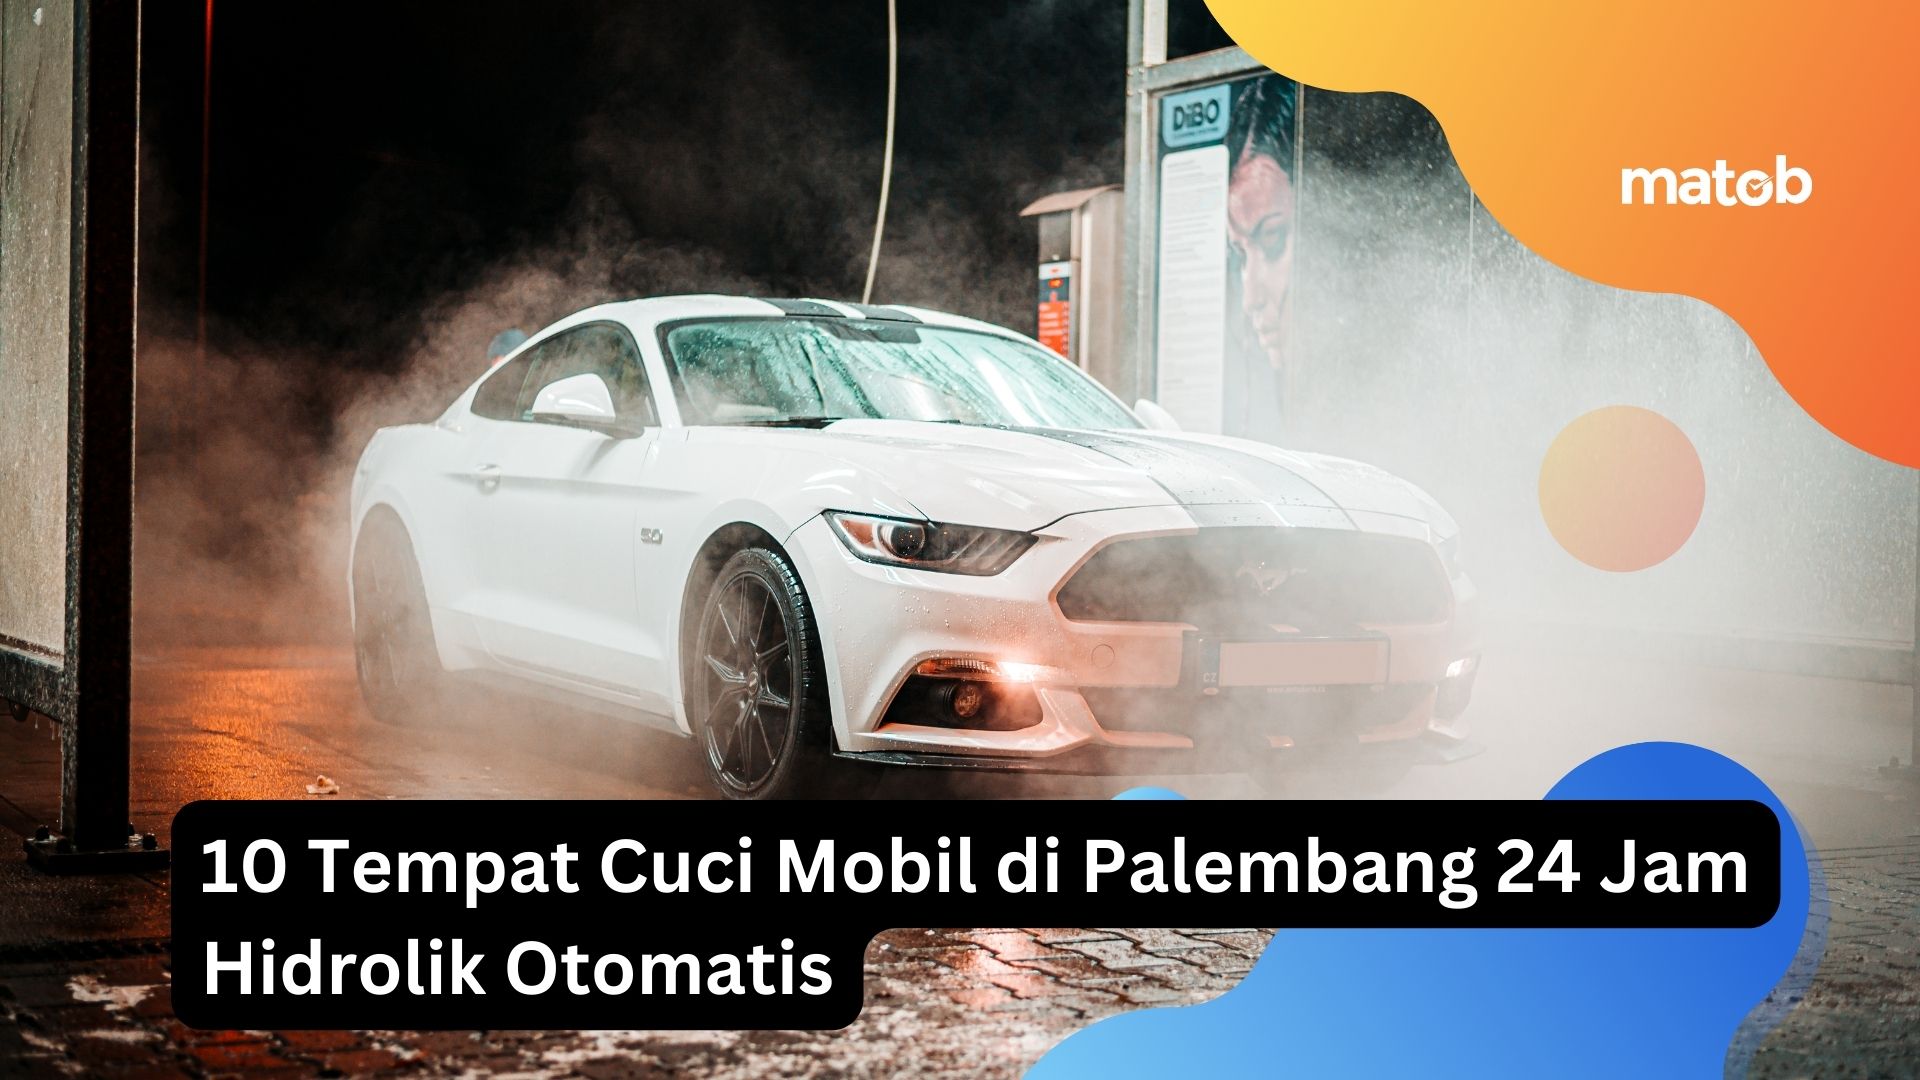 10 Tempat Cuci Mobil di Palembang 24 Jam Hidrolik Otomatis